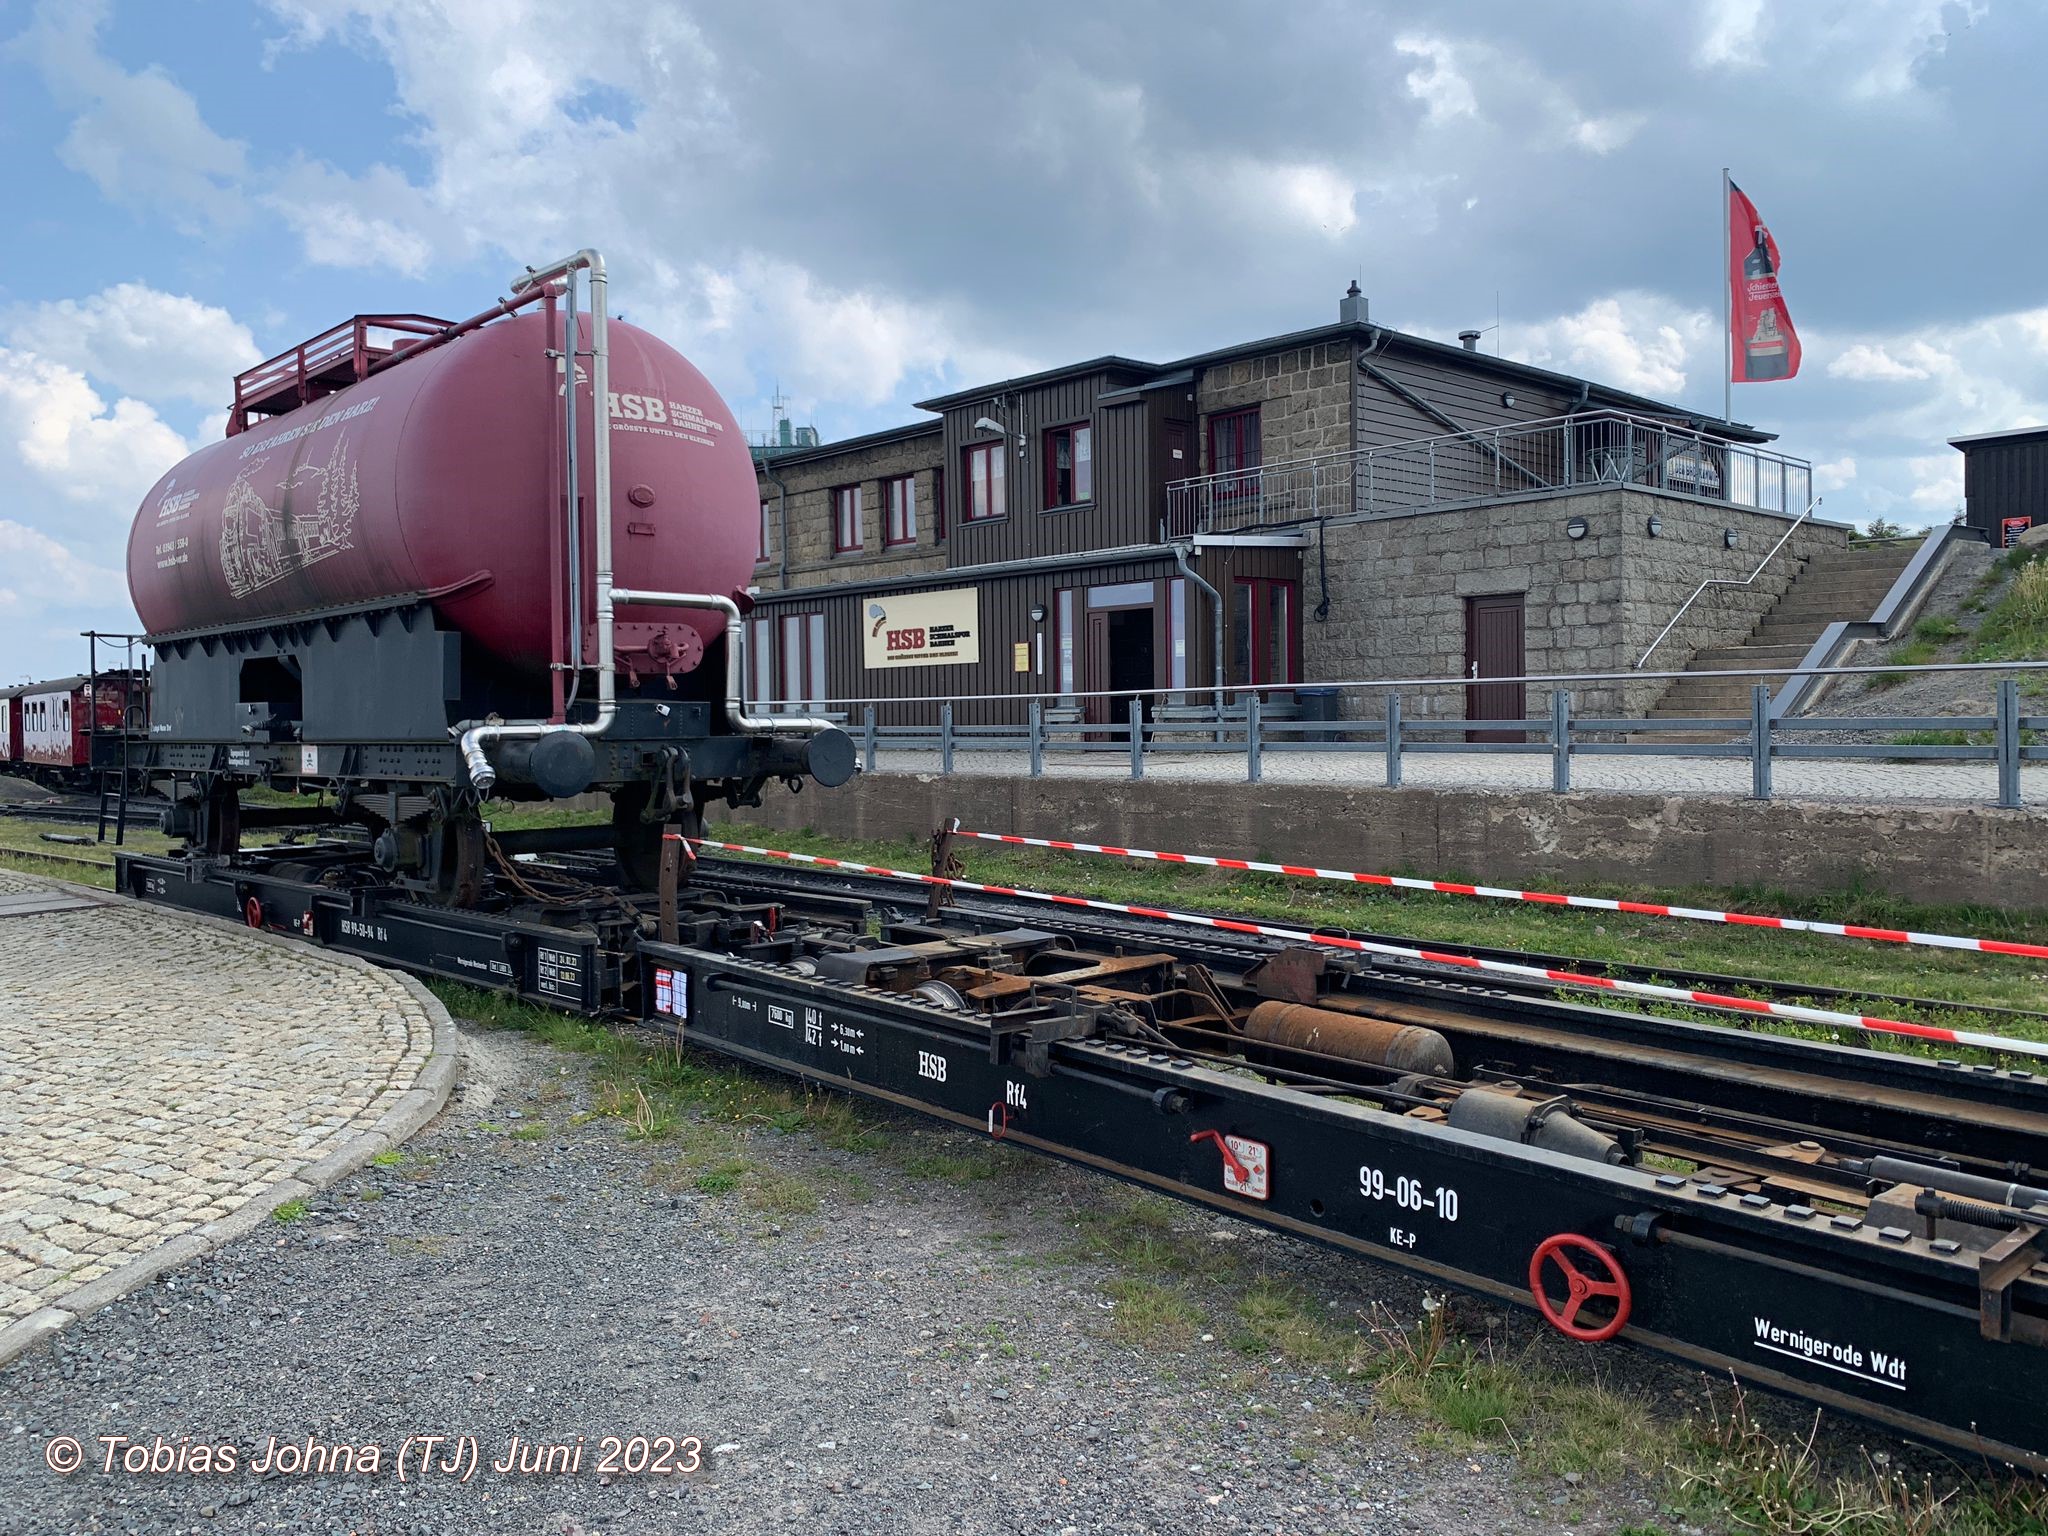 Die beiden Rollwagen der HSB vorne mit dem HSB Löschwasserwagen beladen: 99-50-54 und ohne Beladung 99-06-10. Blick zum Bahnhof Brocken in dem auch die Gaststätte untergebracht ist. 